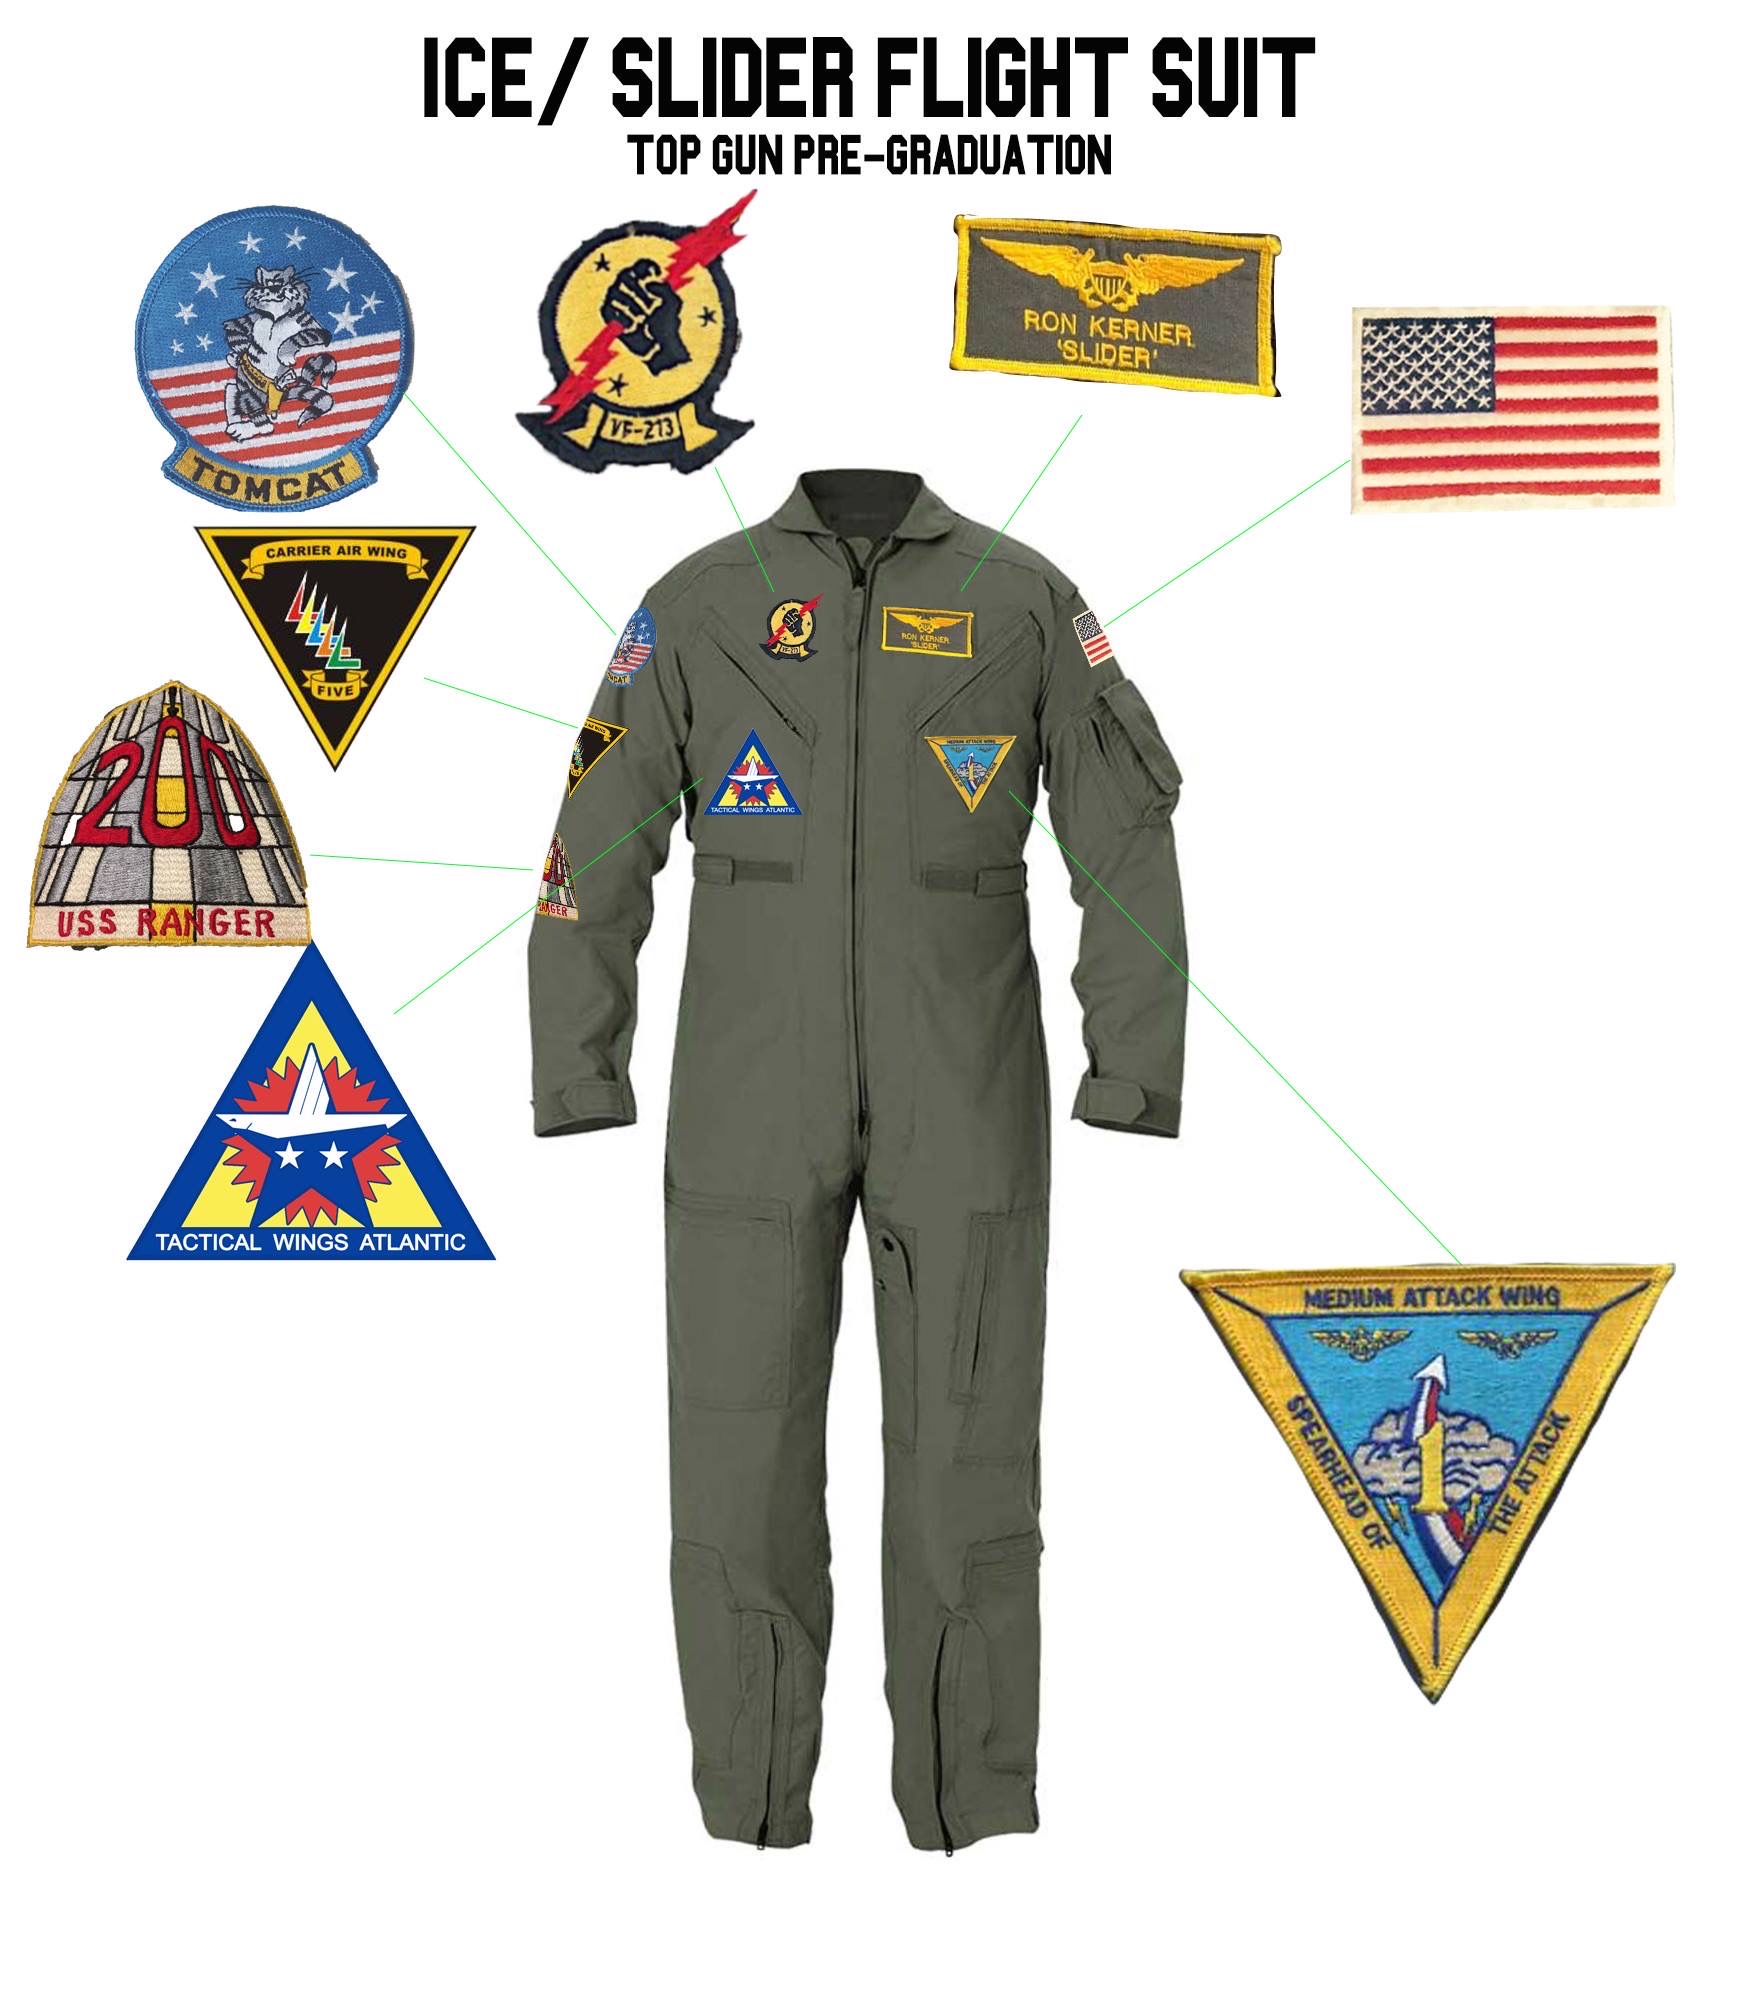 TOPGUN (1986): SLIDER's 'Pre-Graduation' Flight Suit